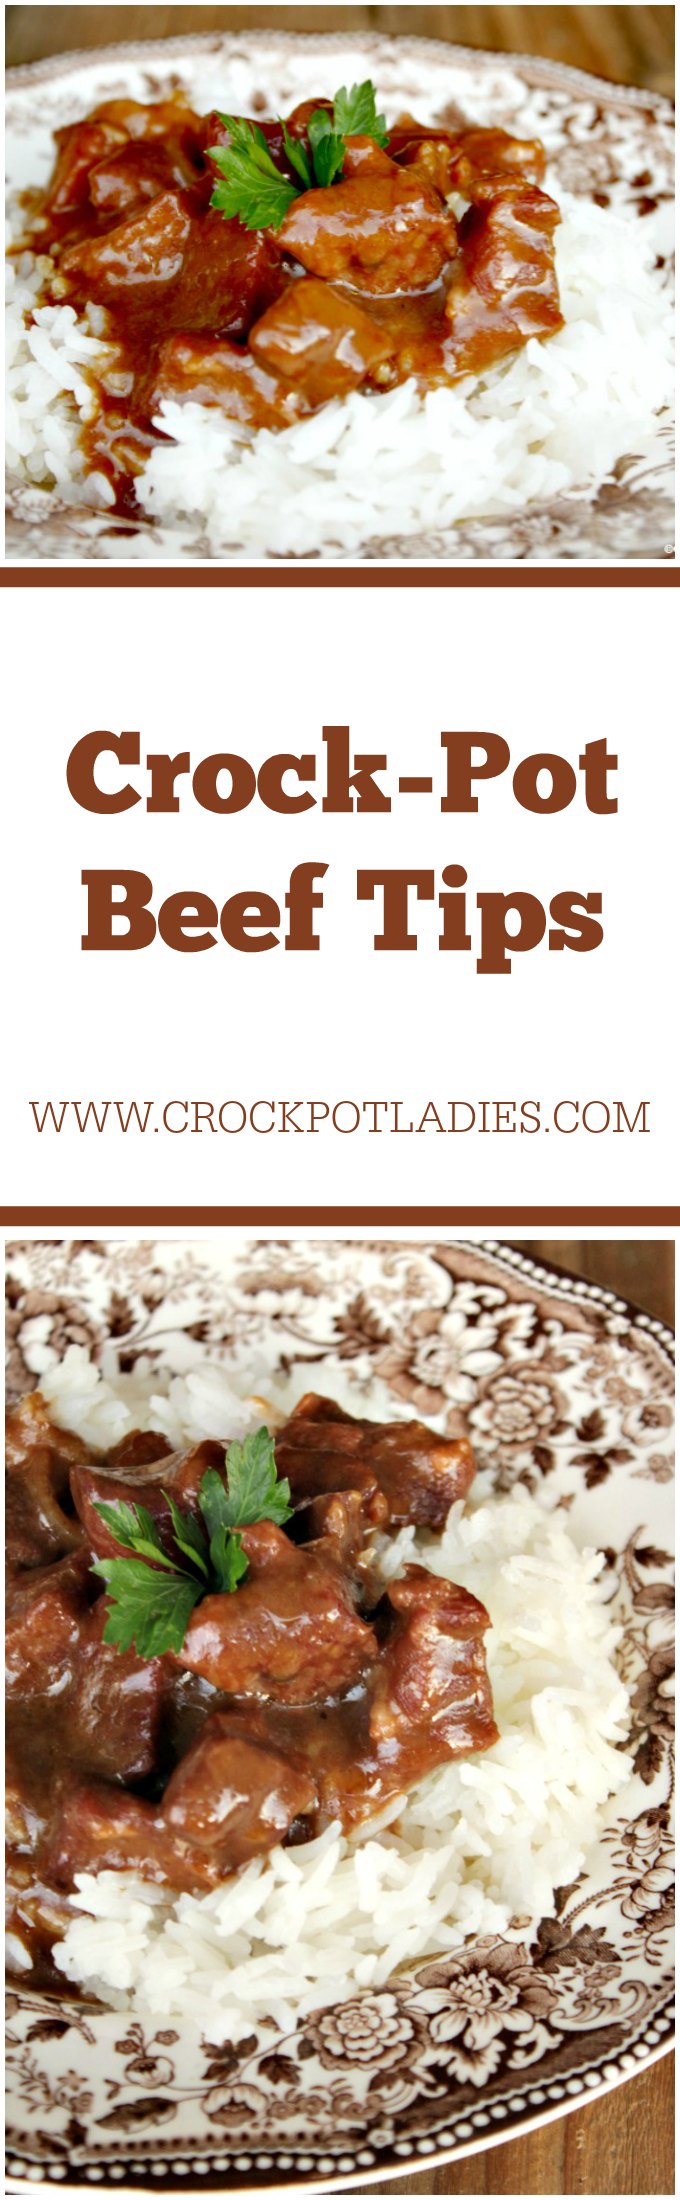 Crock-Pot Beef Tips